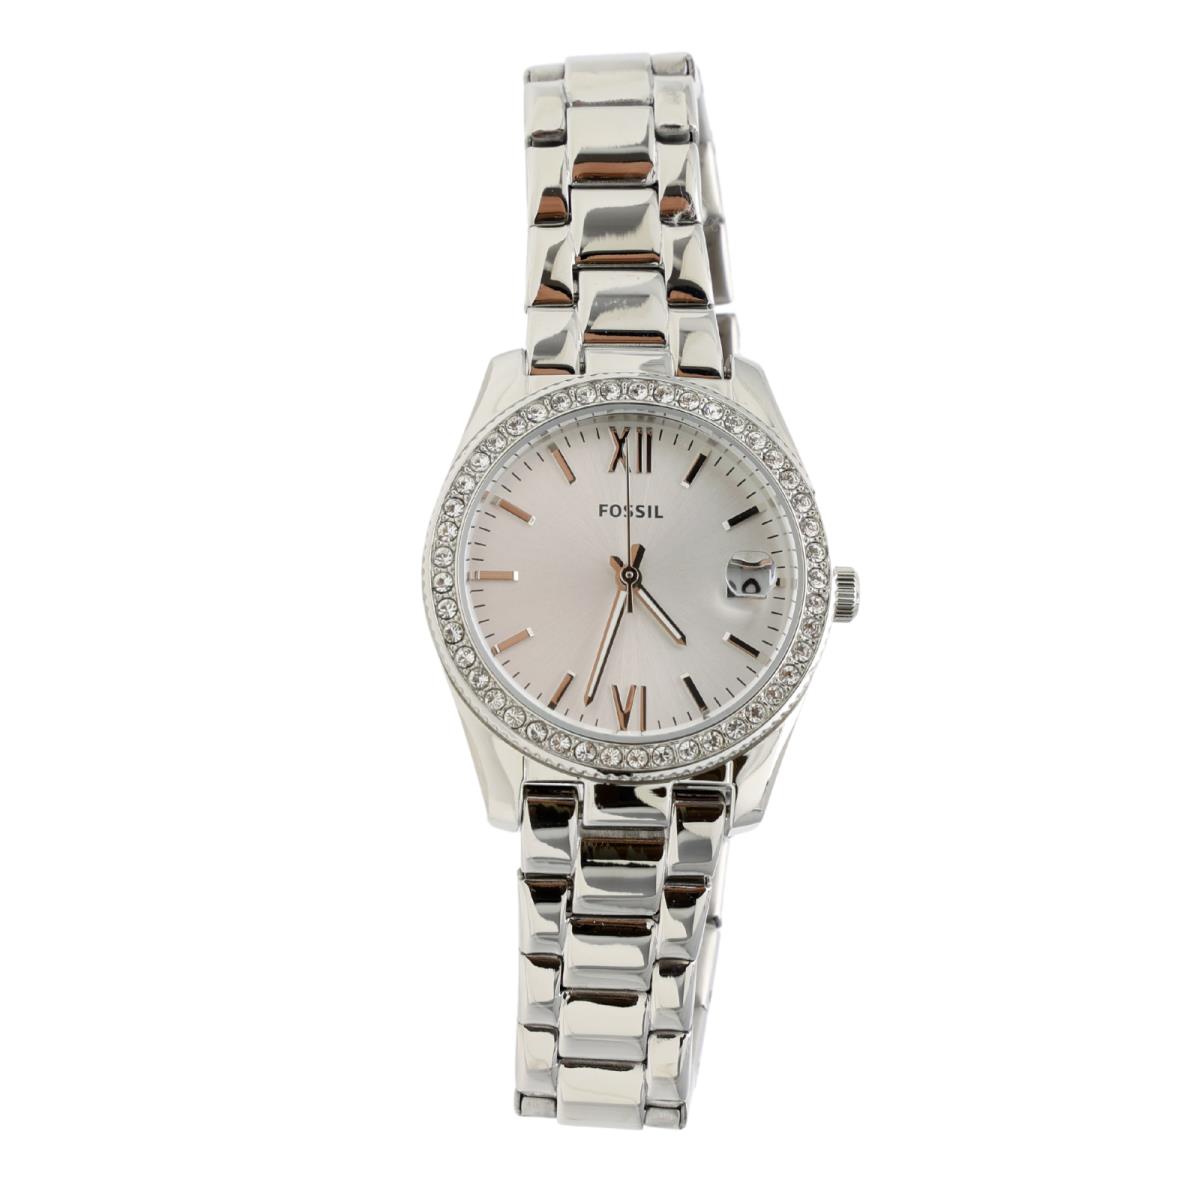 Fossil 2866 Womens Silver Scarlette Crystal Bracelet Watch 32mm